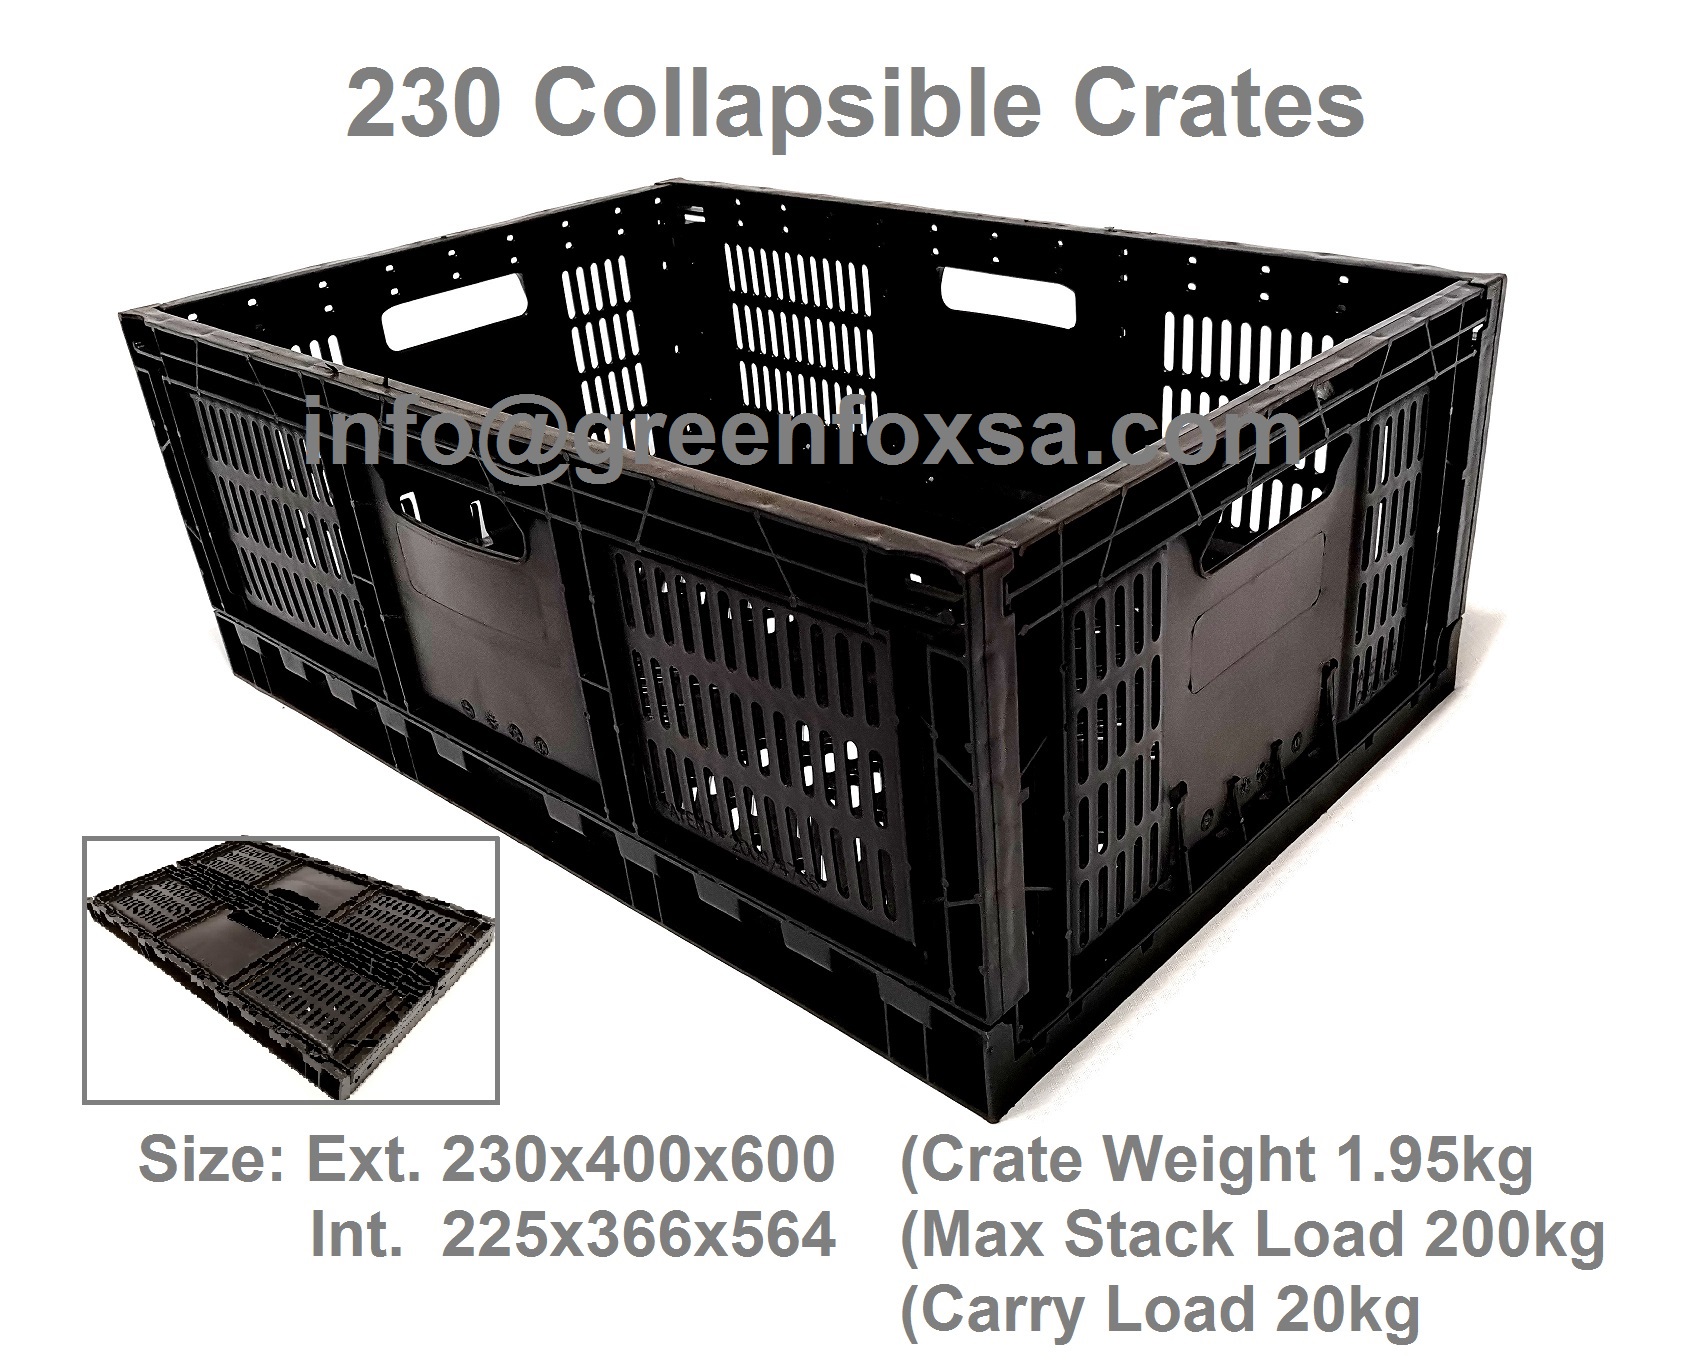 farming-crates-collapsible-230-black-plastic-crates